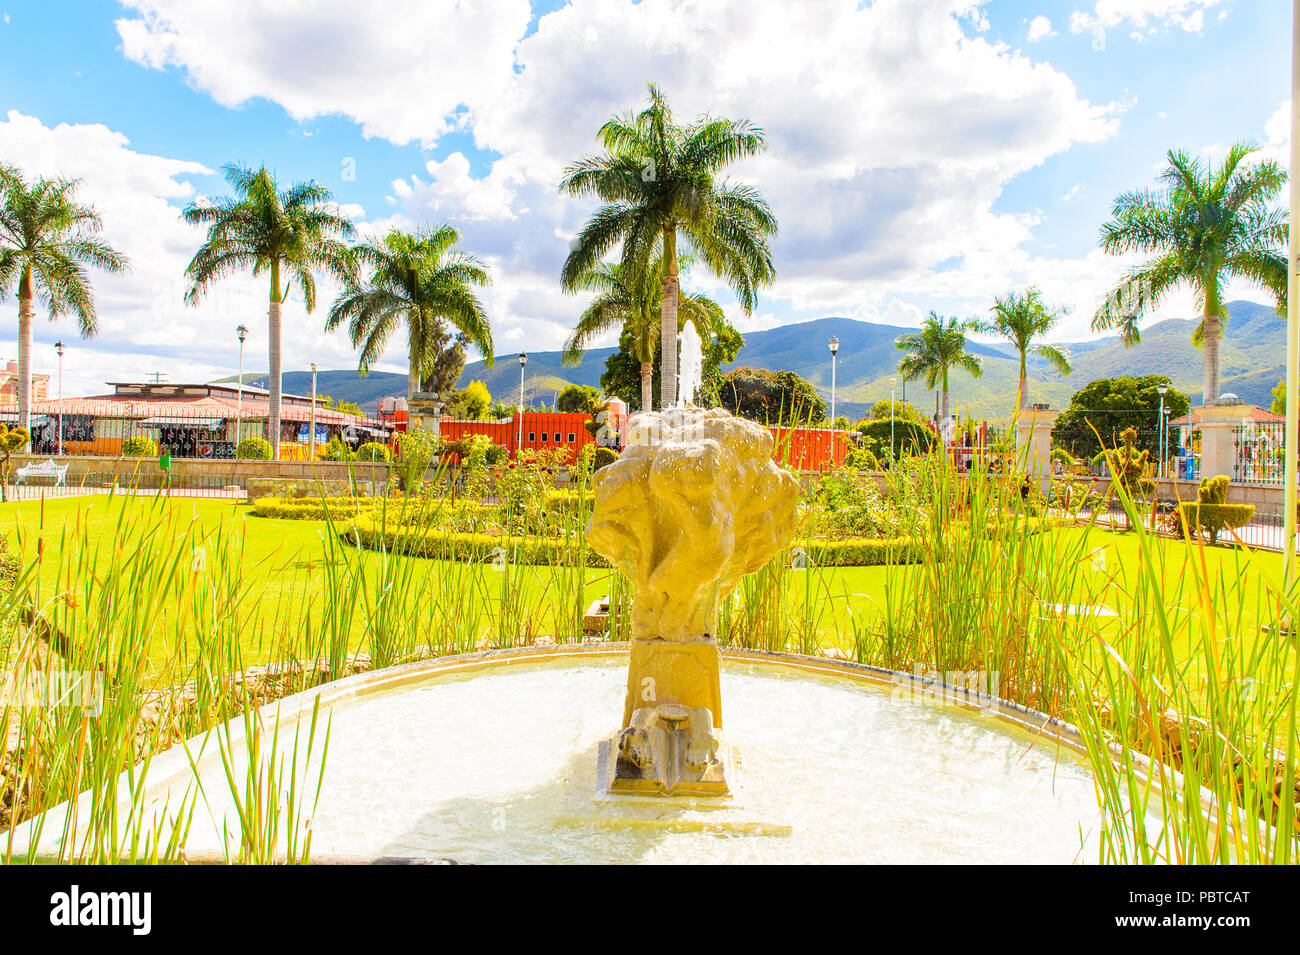 Garden of a City Hall of  Santa Maria del Tule, Mexico, Valles Centrales region. Stock Photo